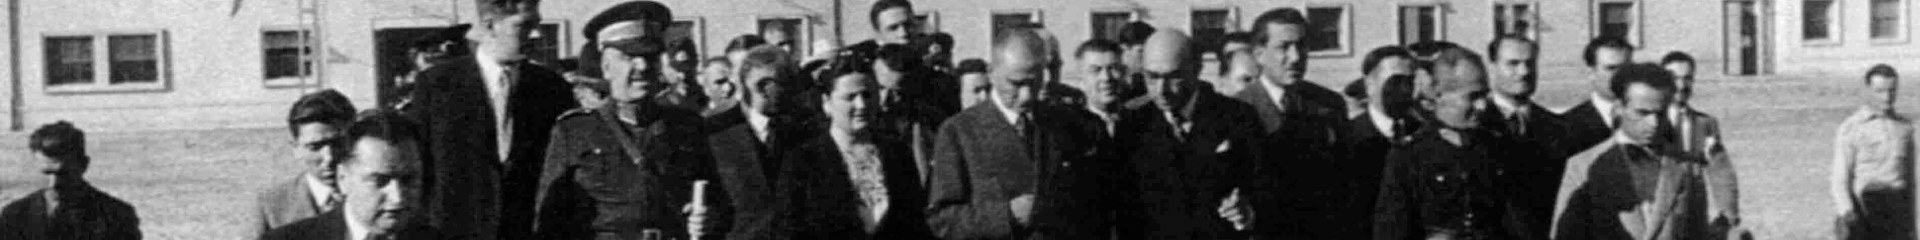 Atatürk Sanayi Müzesi Cumhuriyet Bayramı Coşkusuyla Açıldı.